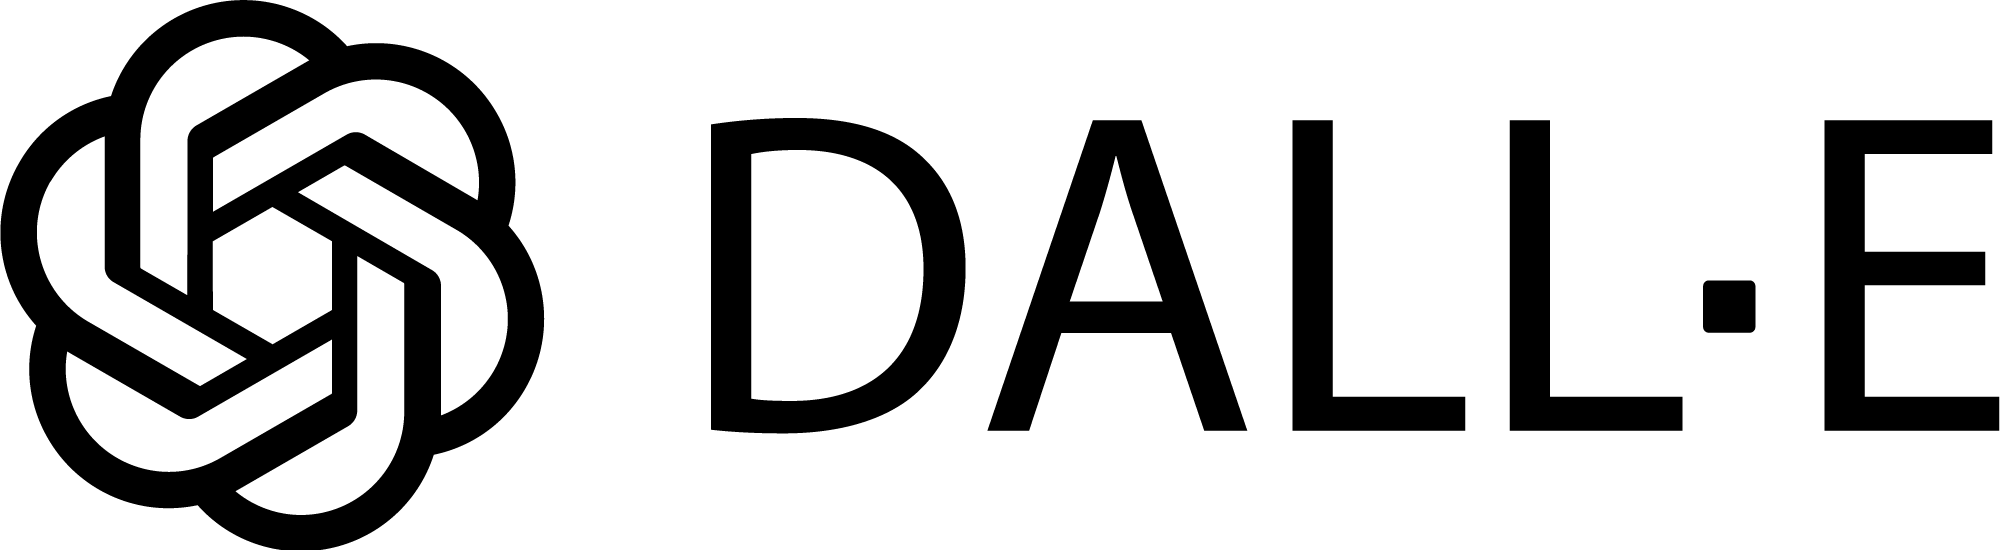 Dalle-E-logo